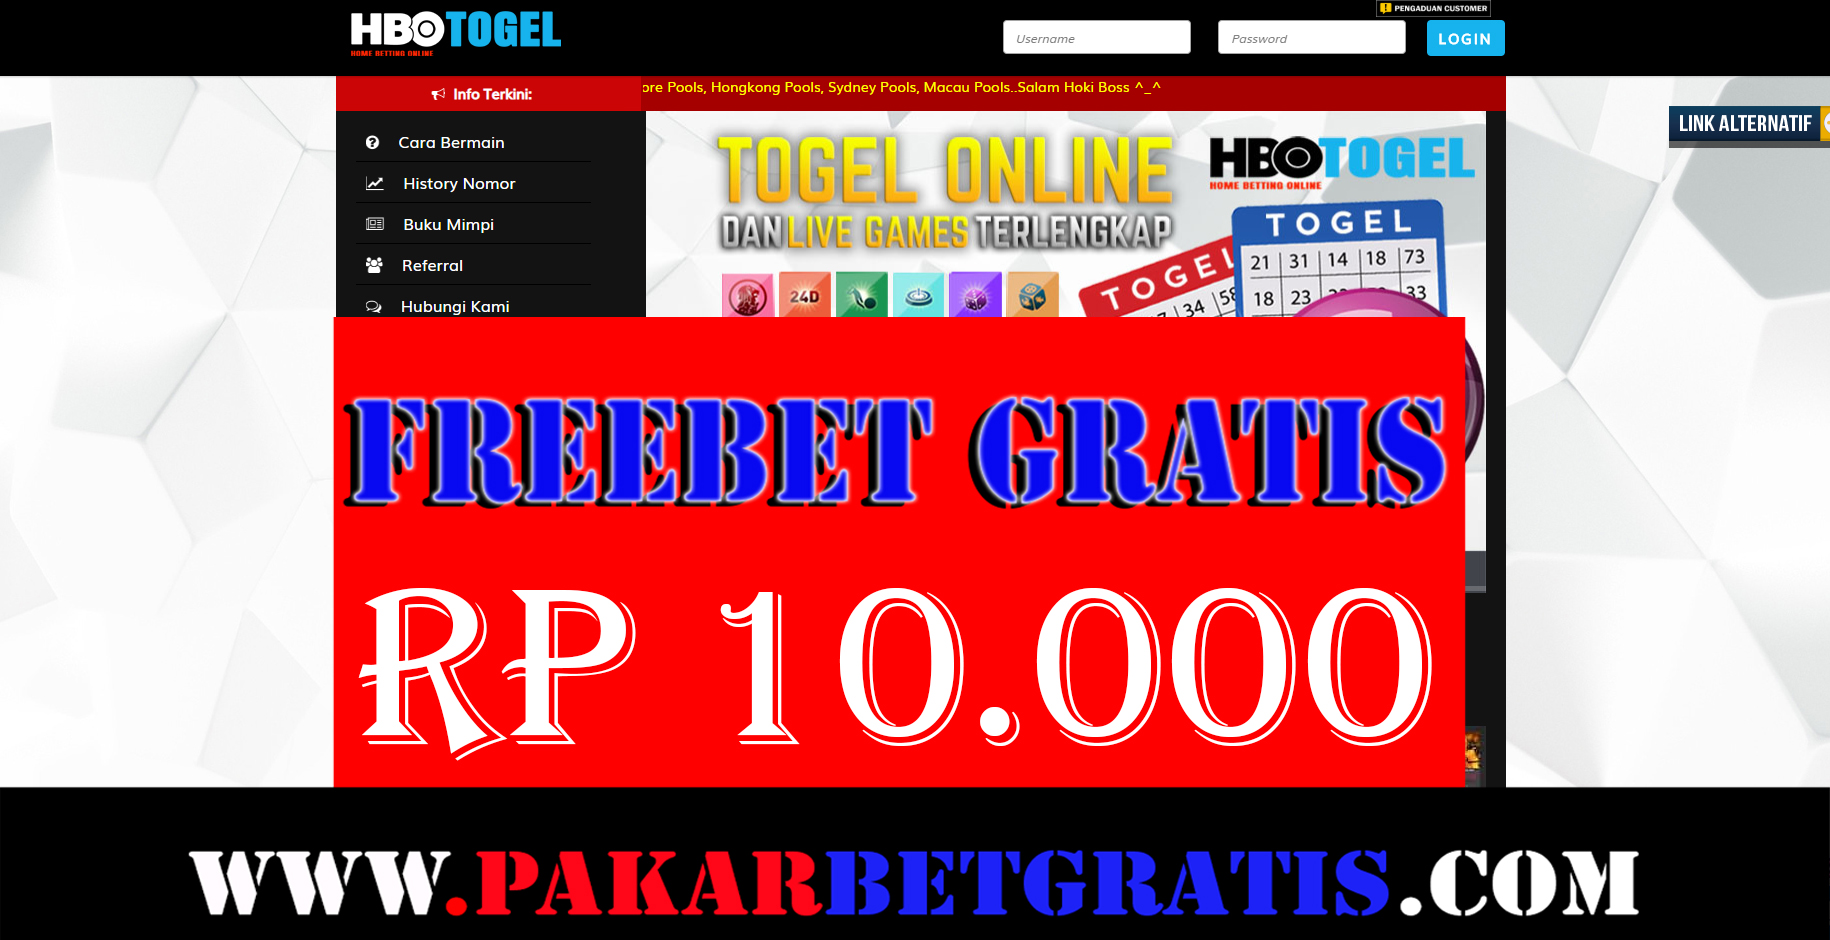 Freebet Gratis HBOTOGEL Rp 10.000 Tanpa Deposit